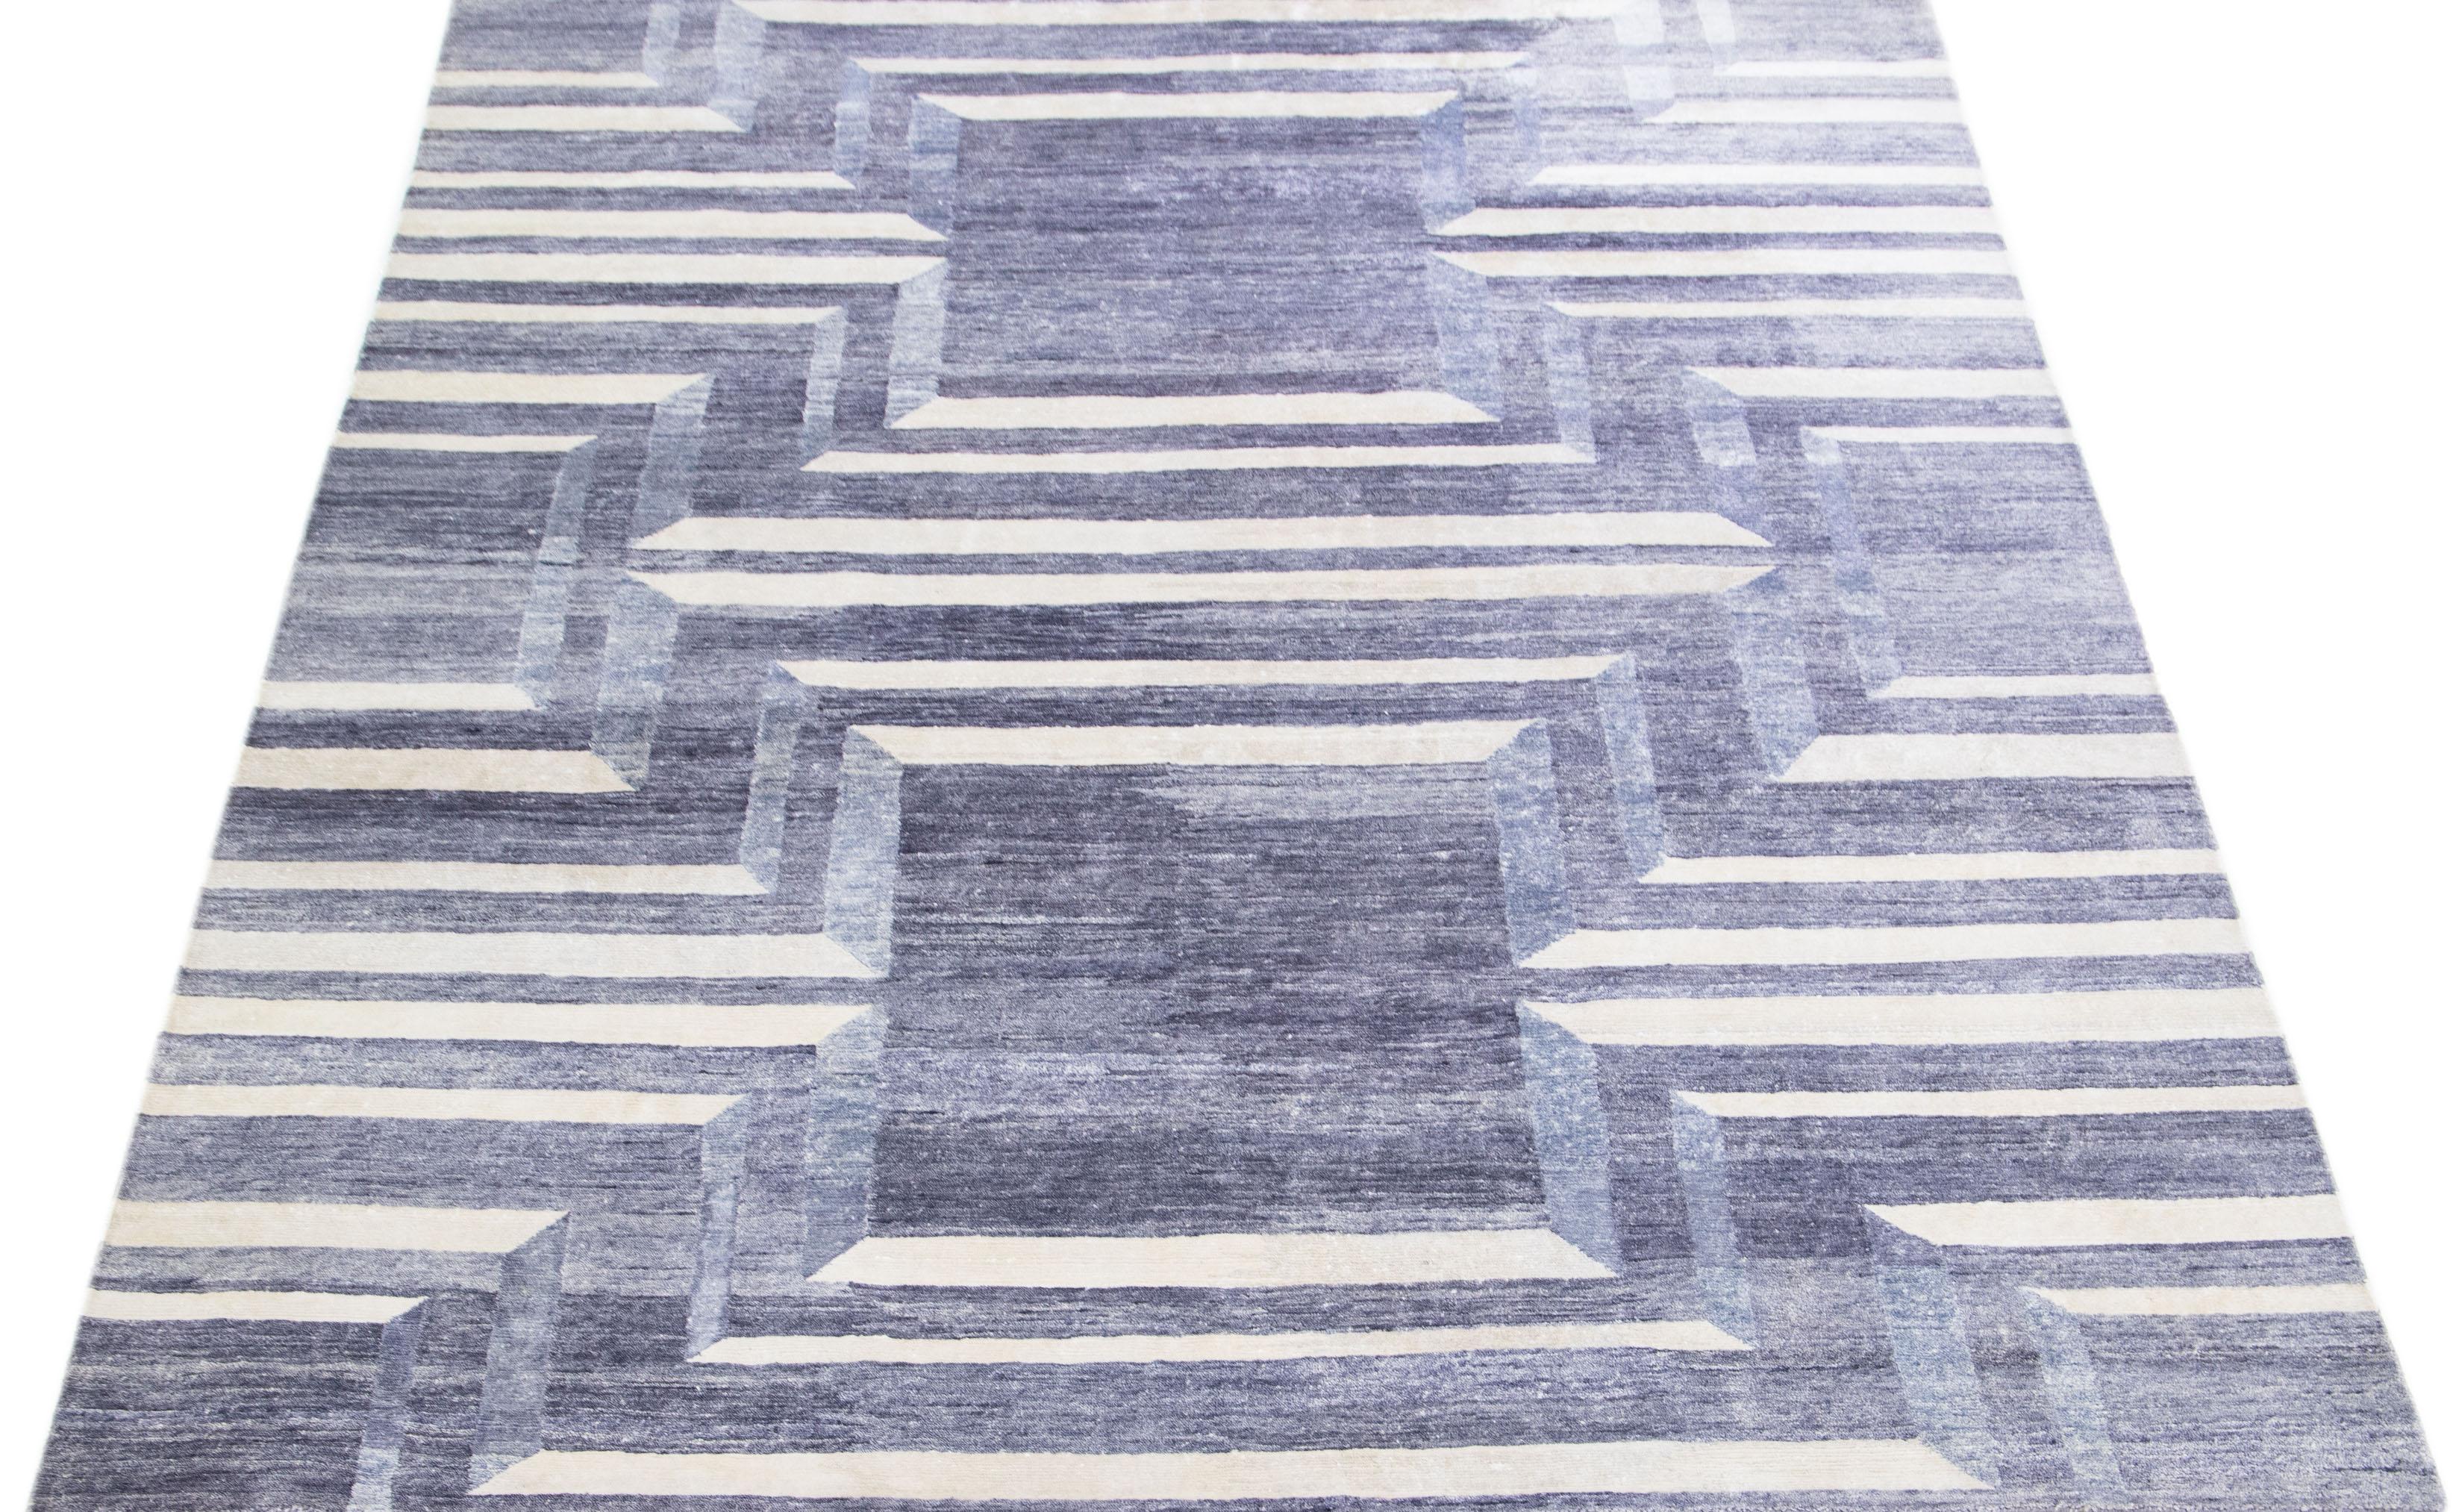 Dieser Teppich aus Wolle und Seide besticht durch sein modernes Design mit einem fesselnden geometrischen Motiv in einem eleganten Grauton. Die exquisiten elfenbeinfarbenen Akzente ergänzen das ausgeprägte abstrakte Muster perfekt und verleihen ihm